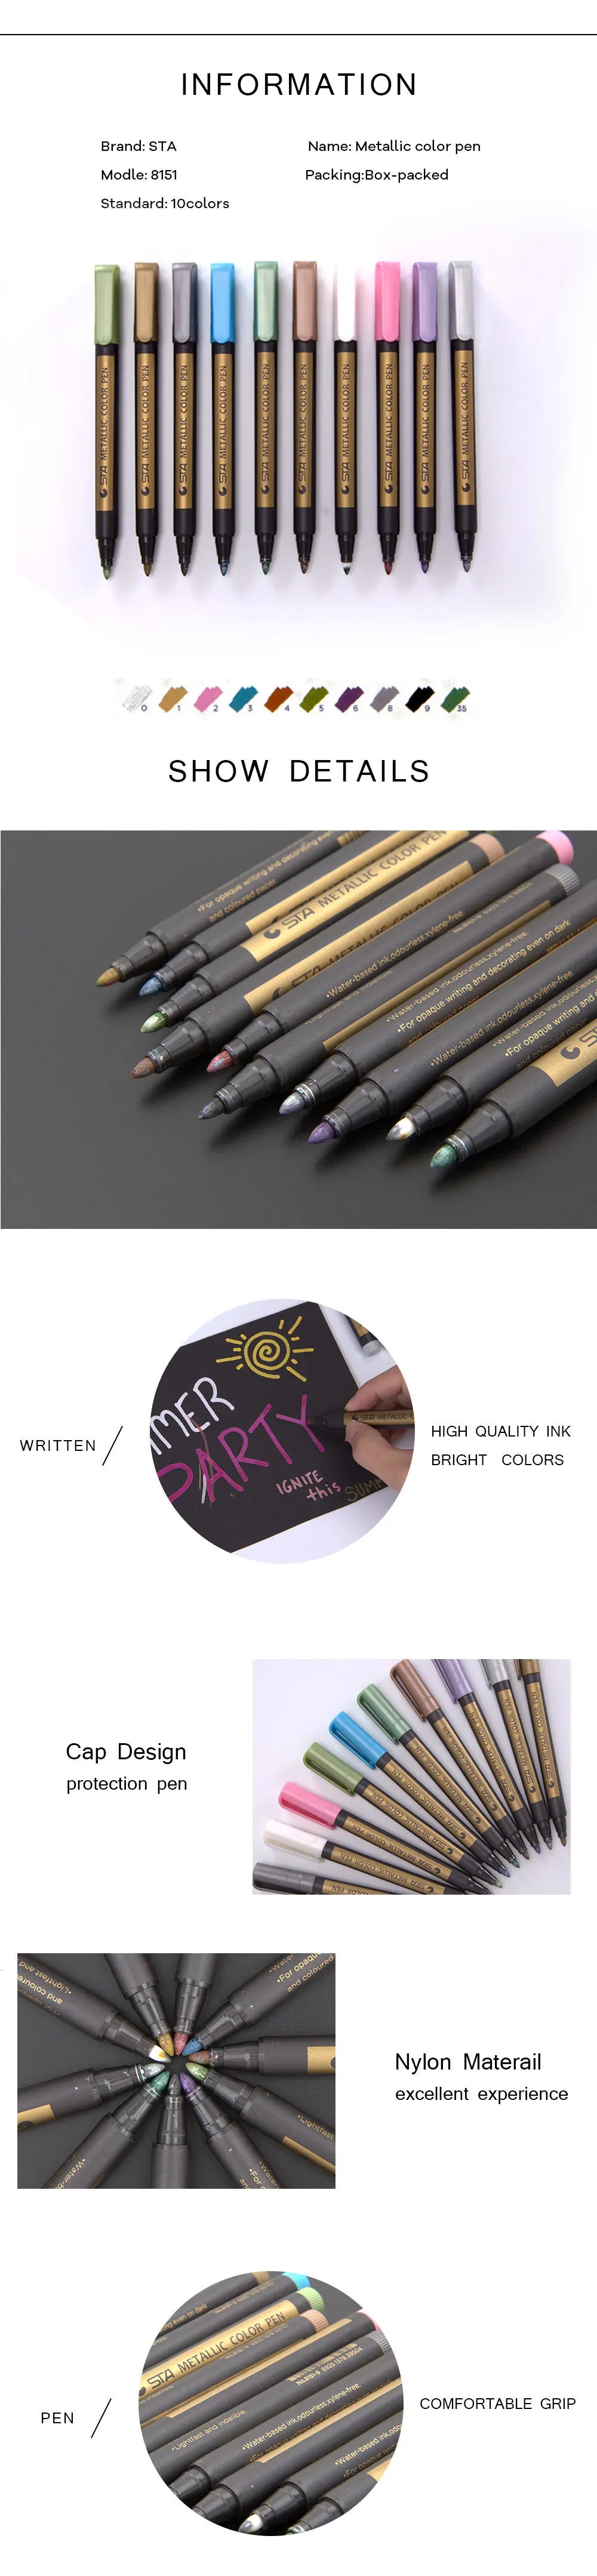 Sta10шт металлический маркер для рисования, черная карта, ручка для рисования, сделай сам, альбом для рисования, граффити, маркеры Шарпи, 10 цветов, товары для рукоделия